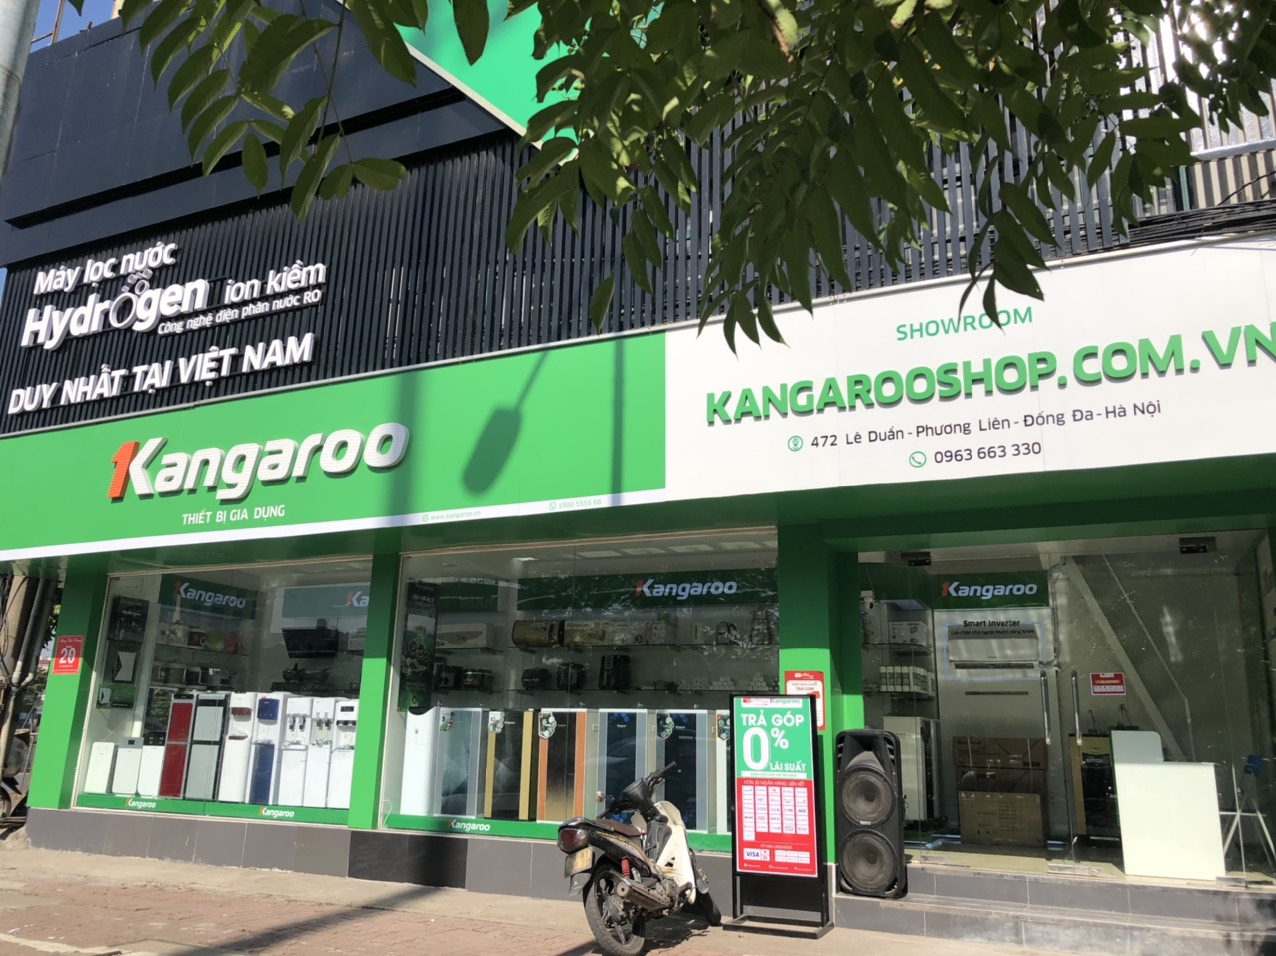 Danh sách các đại lý bán máy lọc nước Kangaroo chính hãng tại Hà Nội